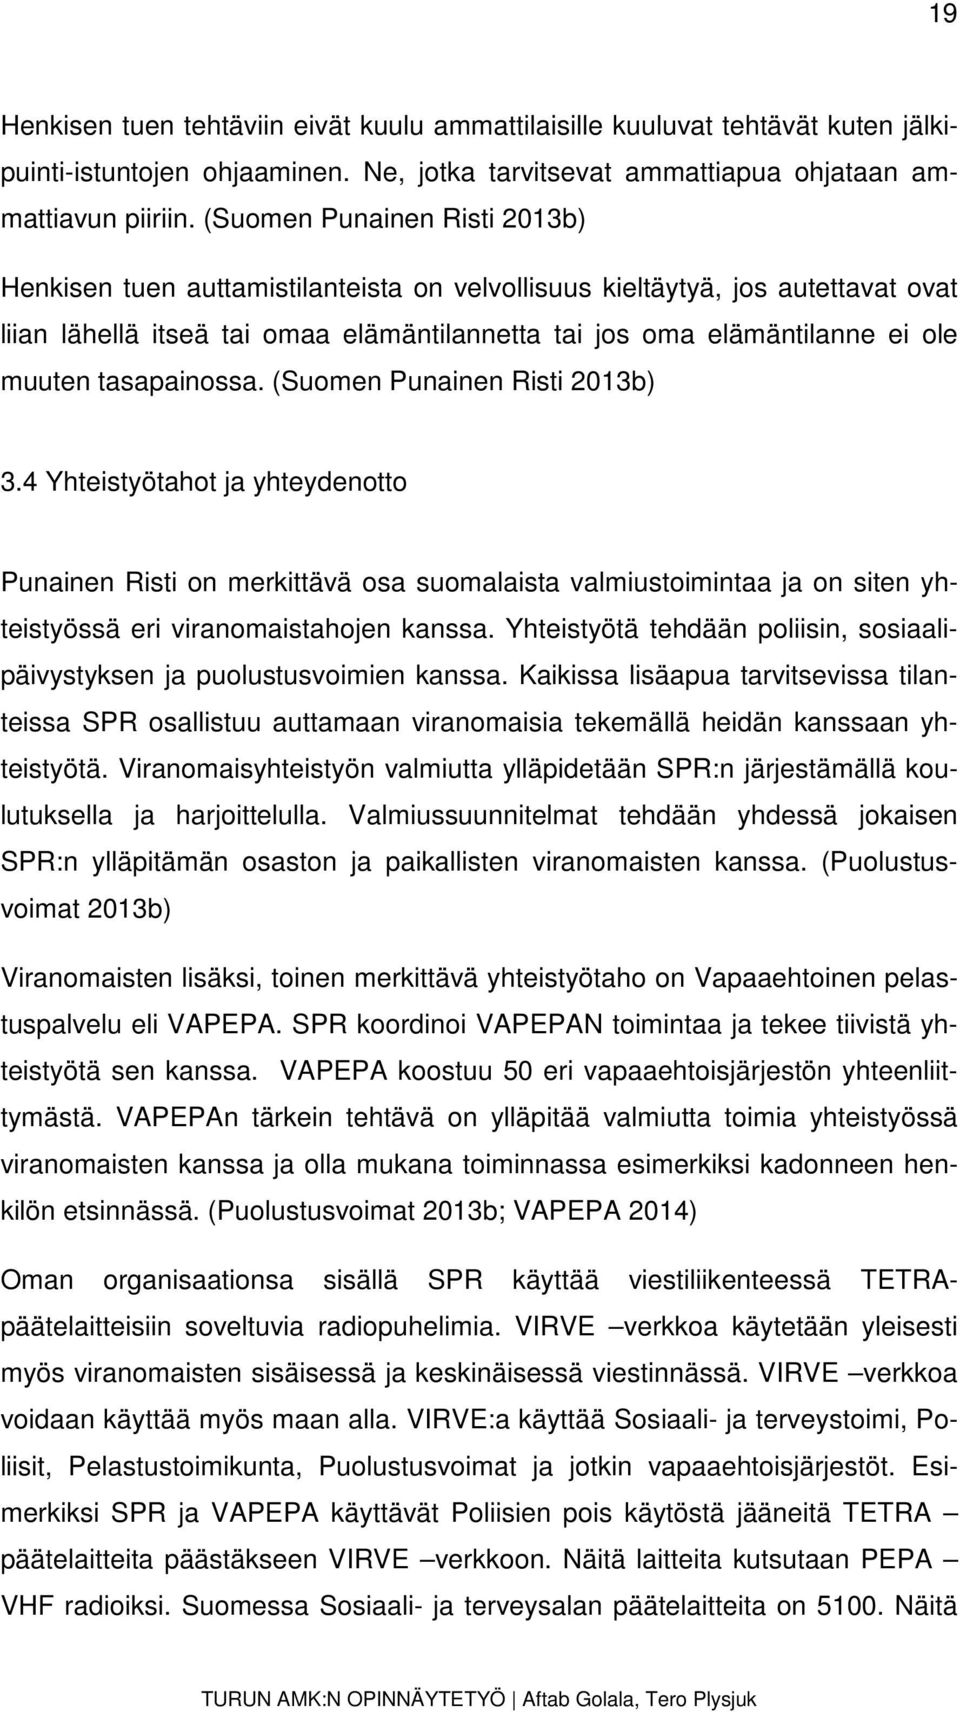 tasapainossa. (Suomen Punainen Risti 2013b) 3.4 Yhteistyötahot ja yhteydenotto Punainen Risti on merkittävä osa suomalaista valmiustoimintaa ja on siten yhteistyössä eri viranomaistahojen kanssa.